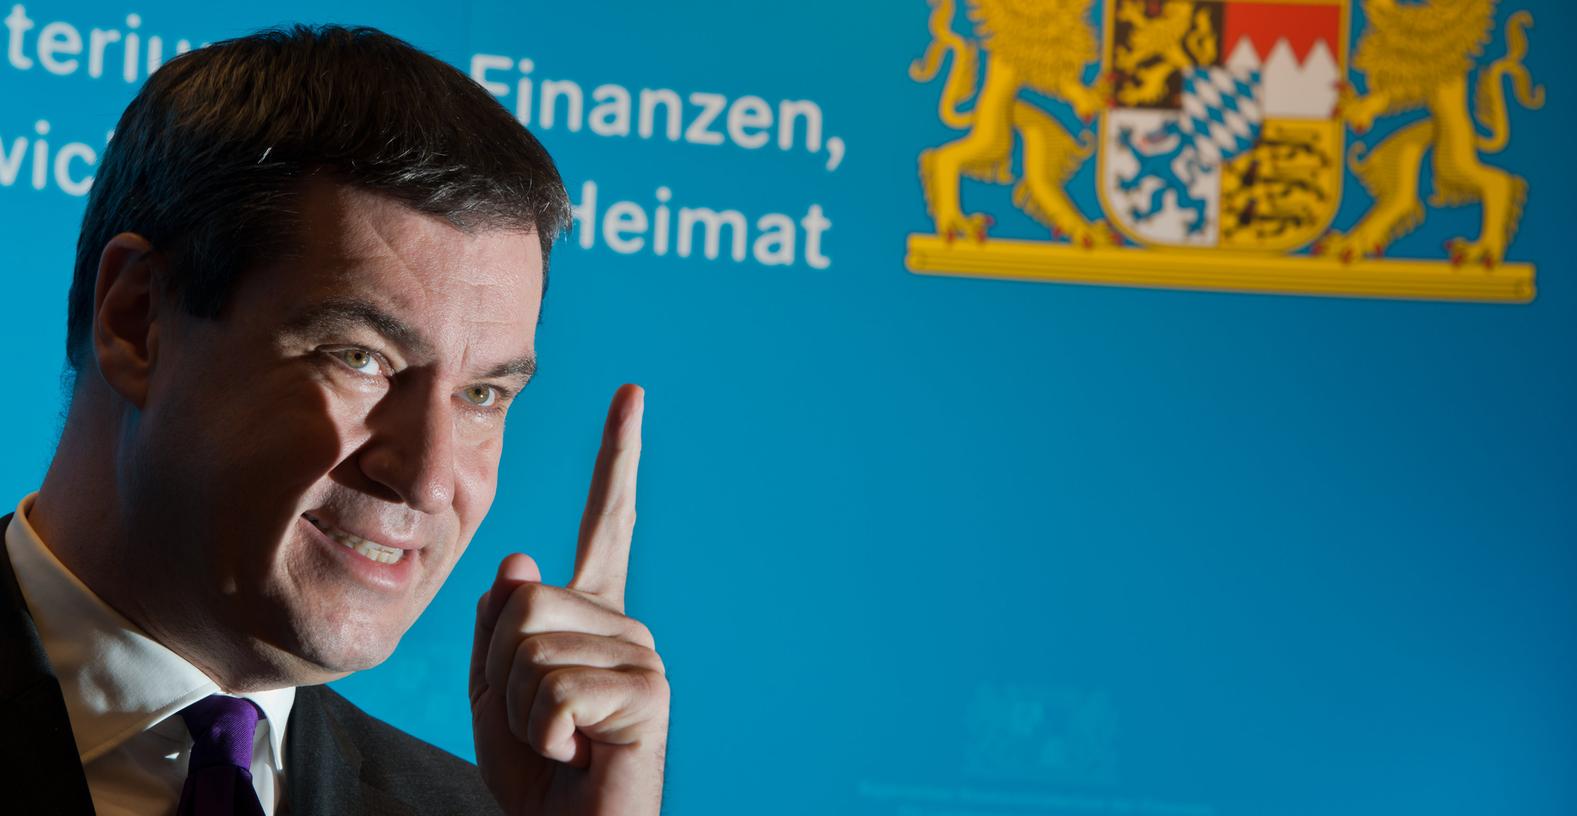 "Es ist besser, Beamter in Bayern zu sein", fasst Markus Söder (CSU) zusammen.